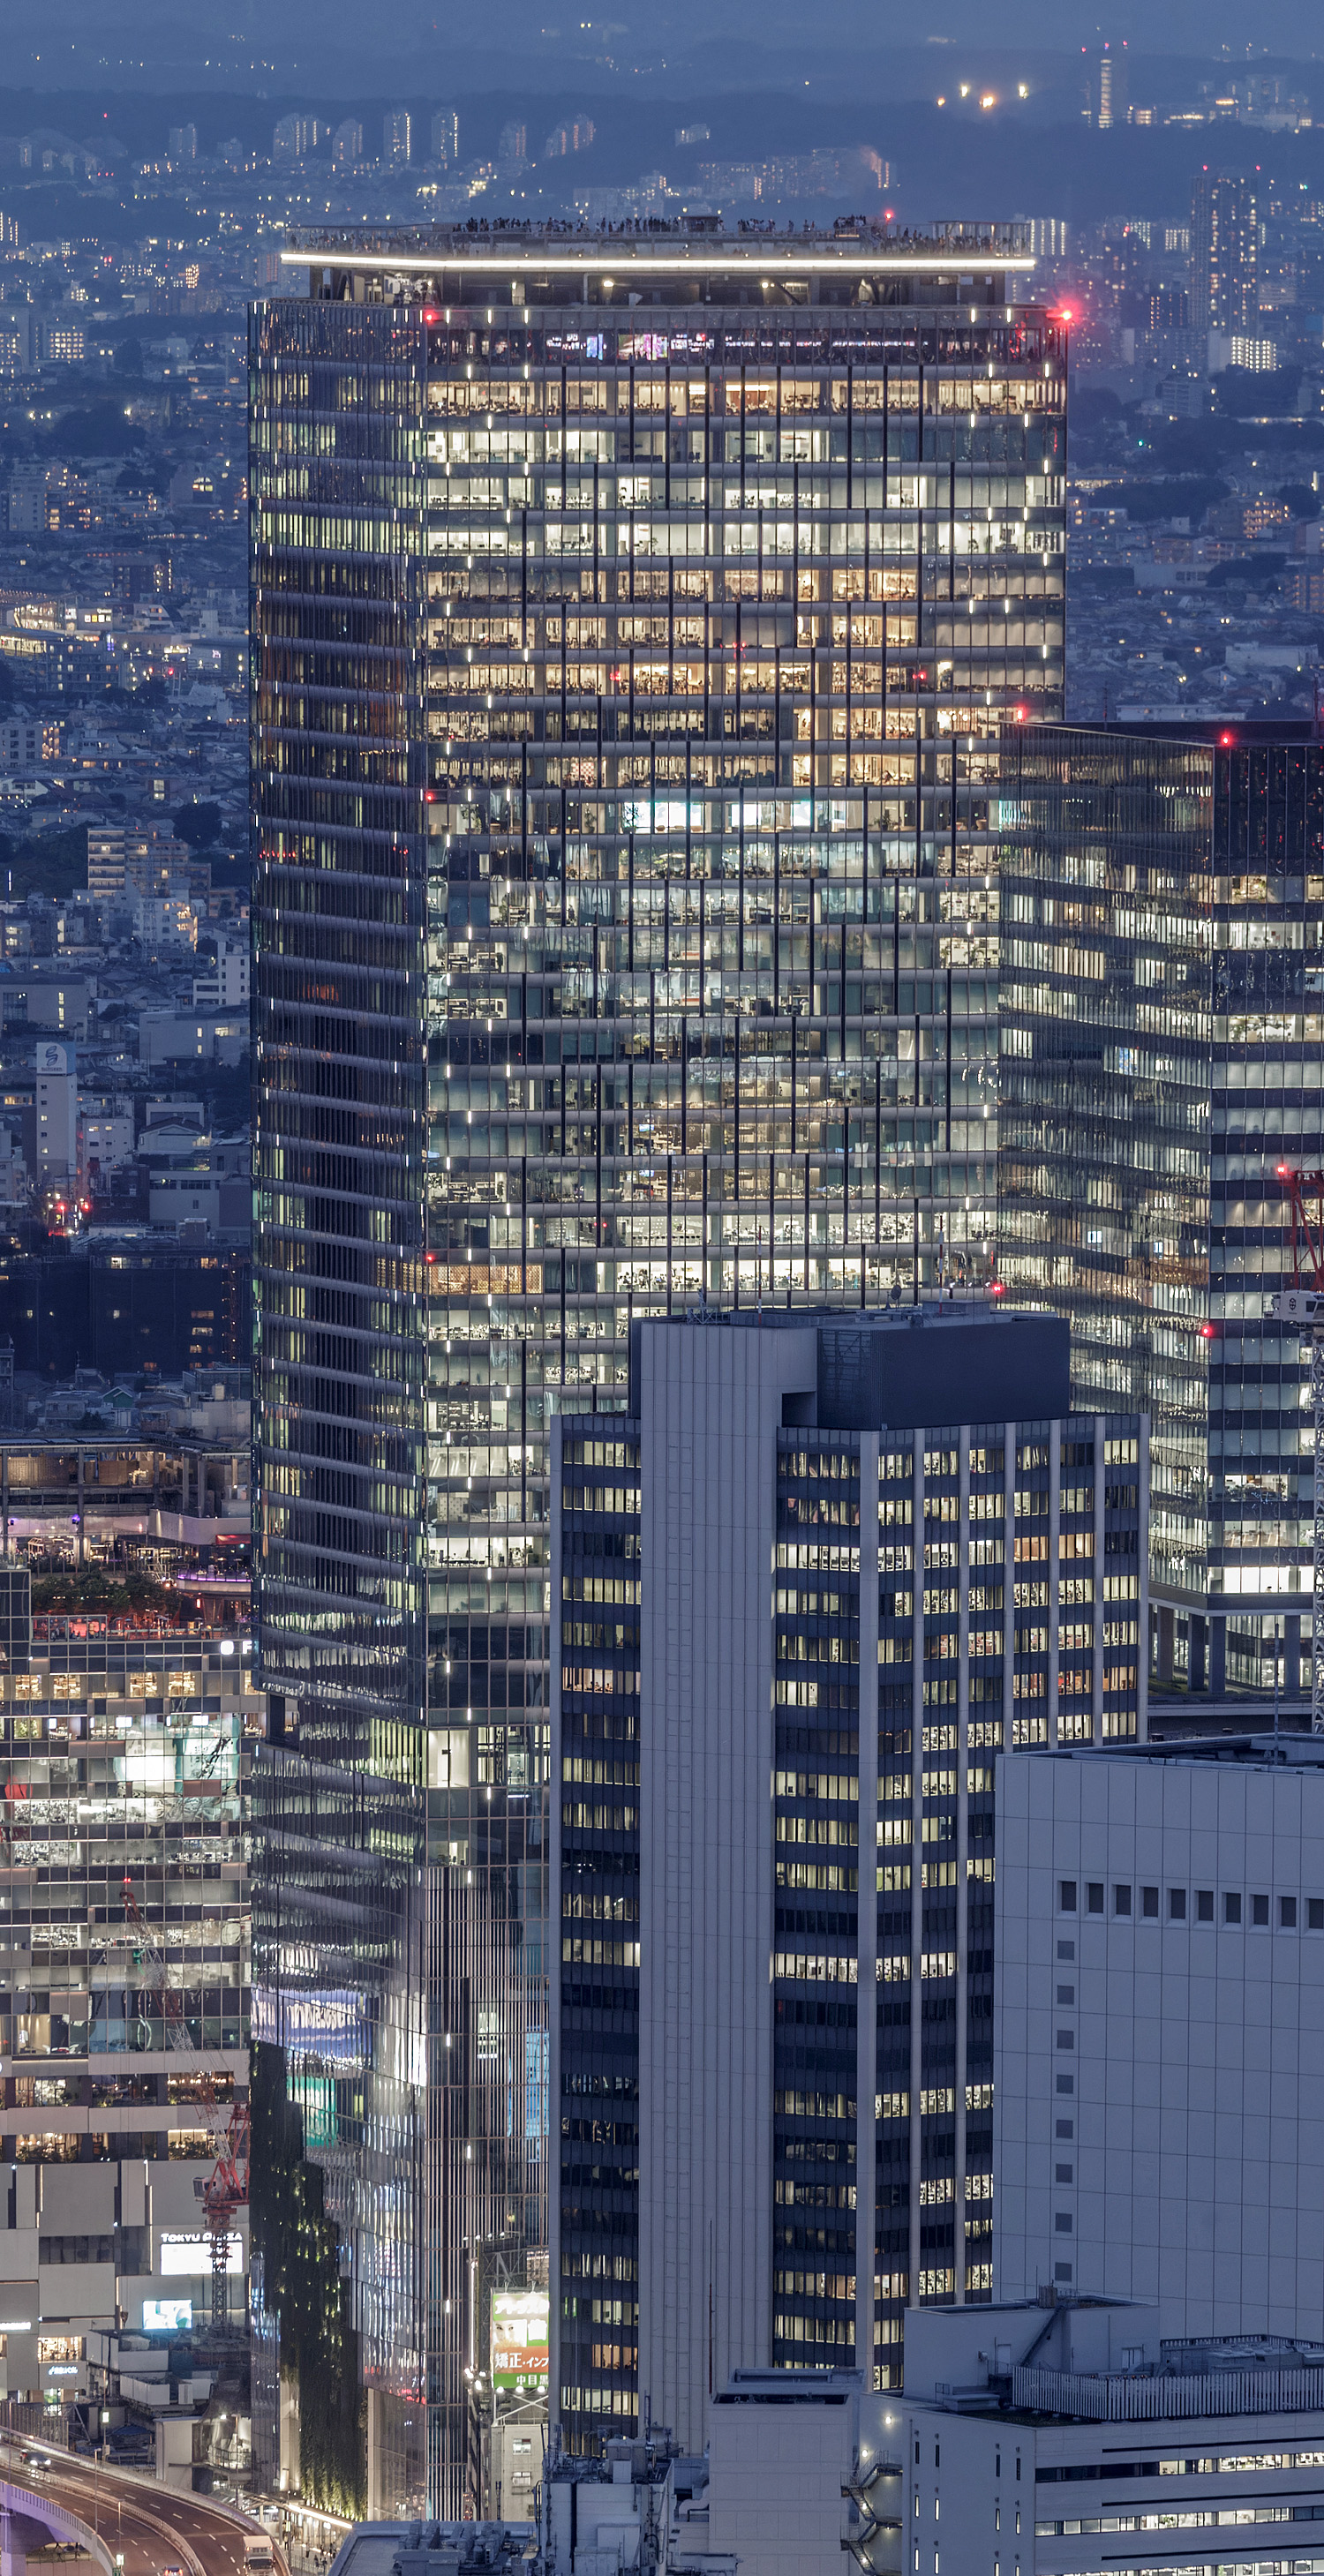 Shibuya Scramble Square, Tokyo - View from Roppongi Hills Mori Tower. © Mathias Beinling